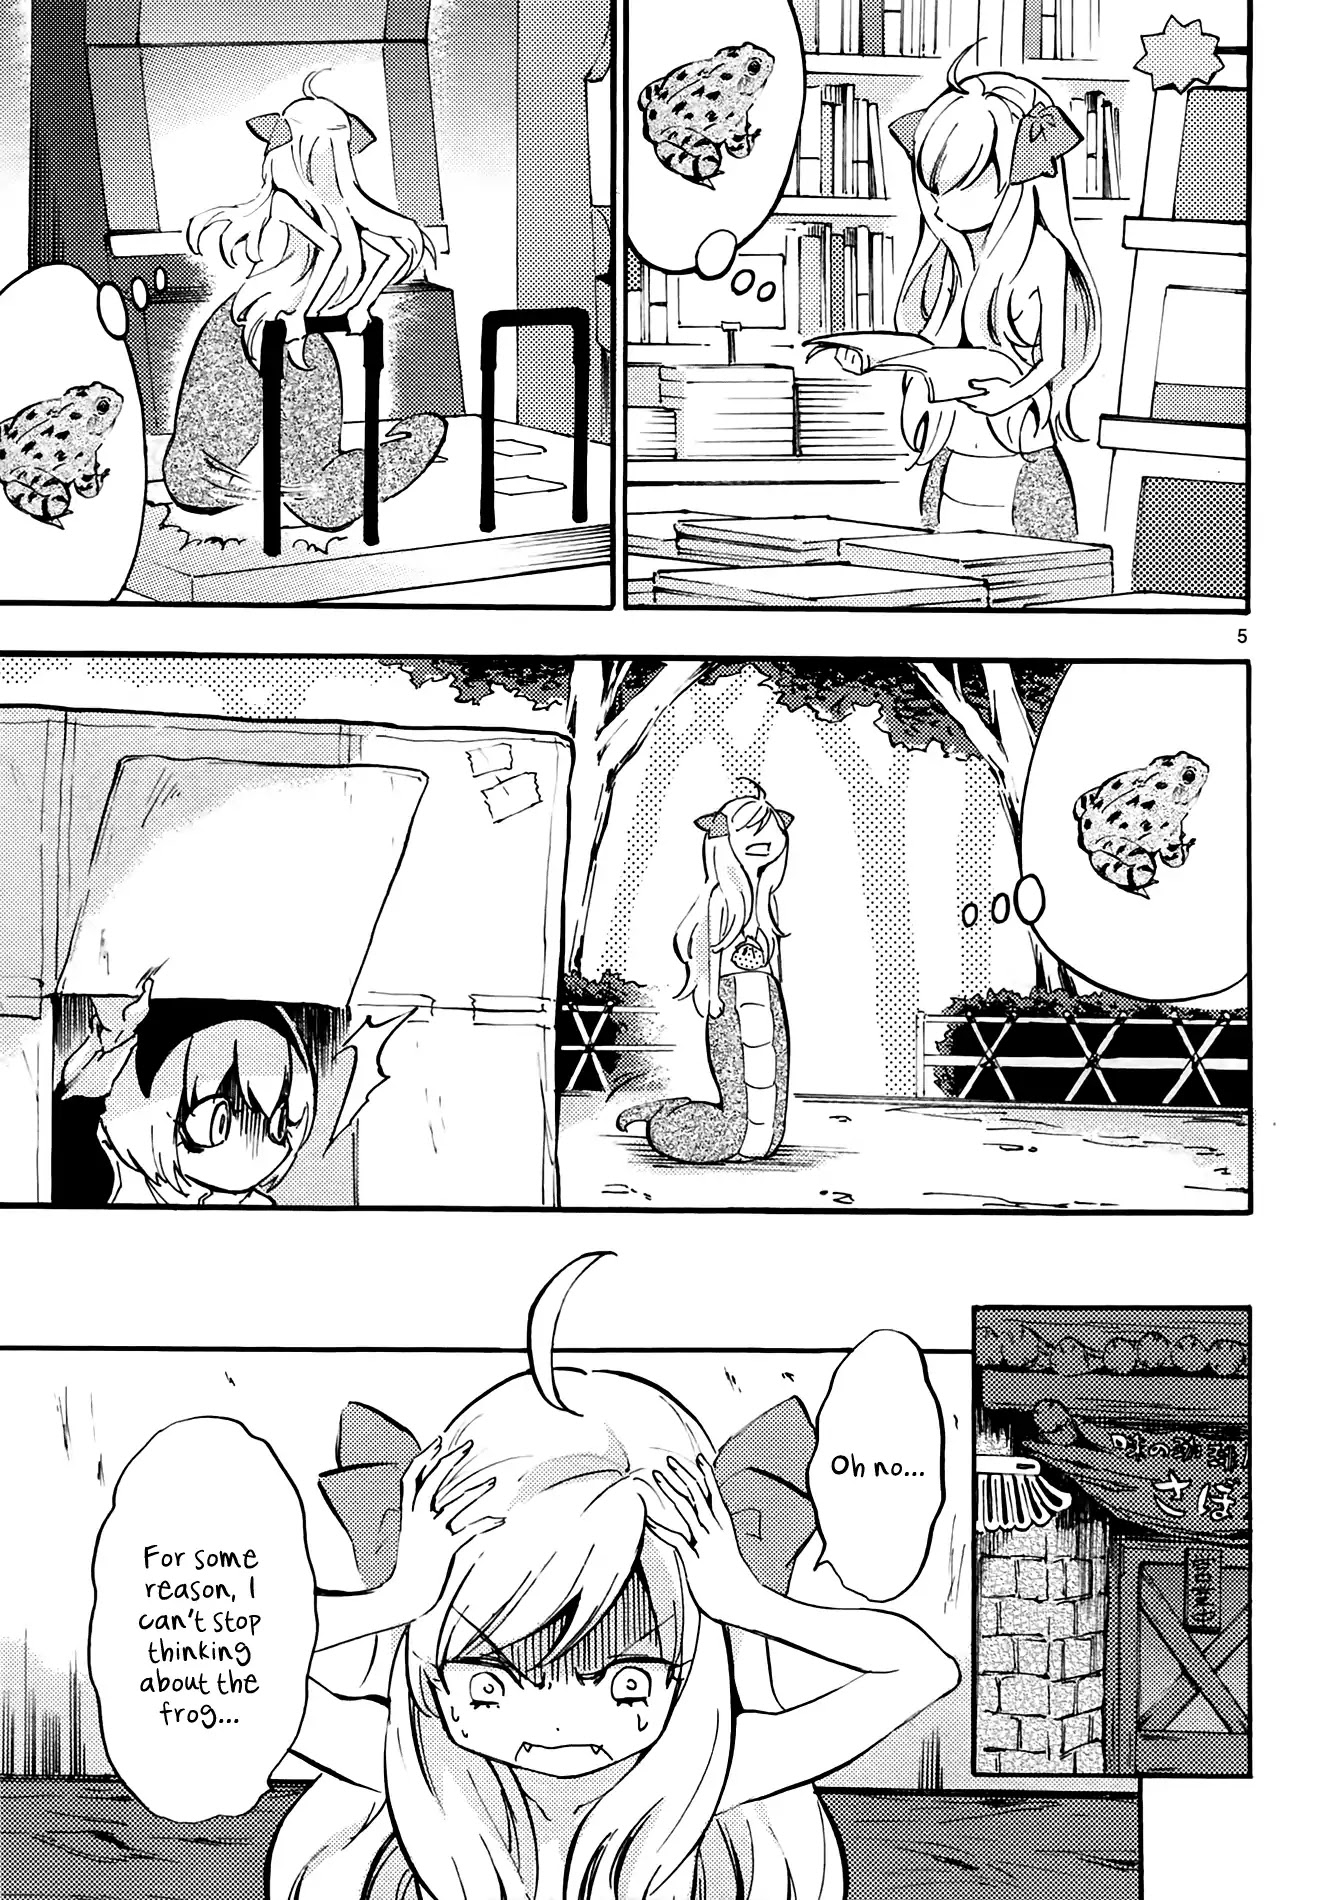 Jashin-chan Dropkick chapter 35 page 5